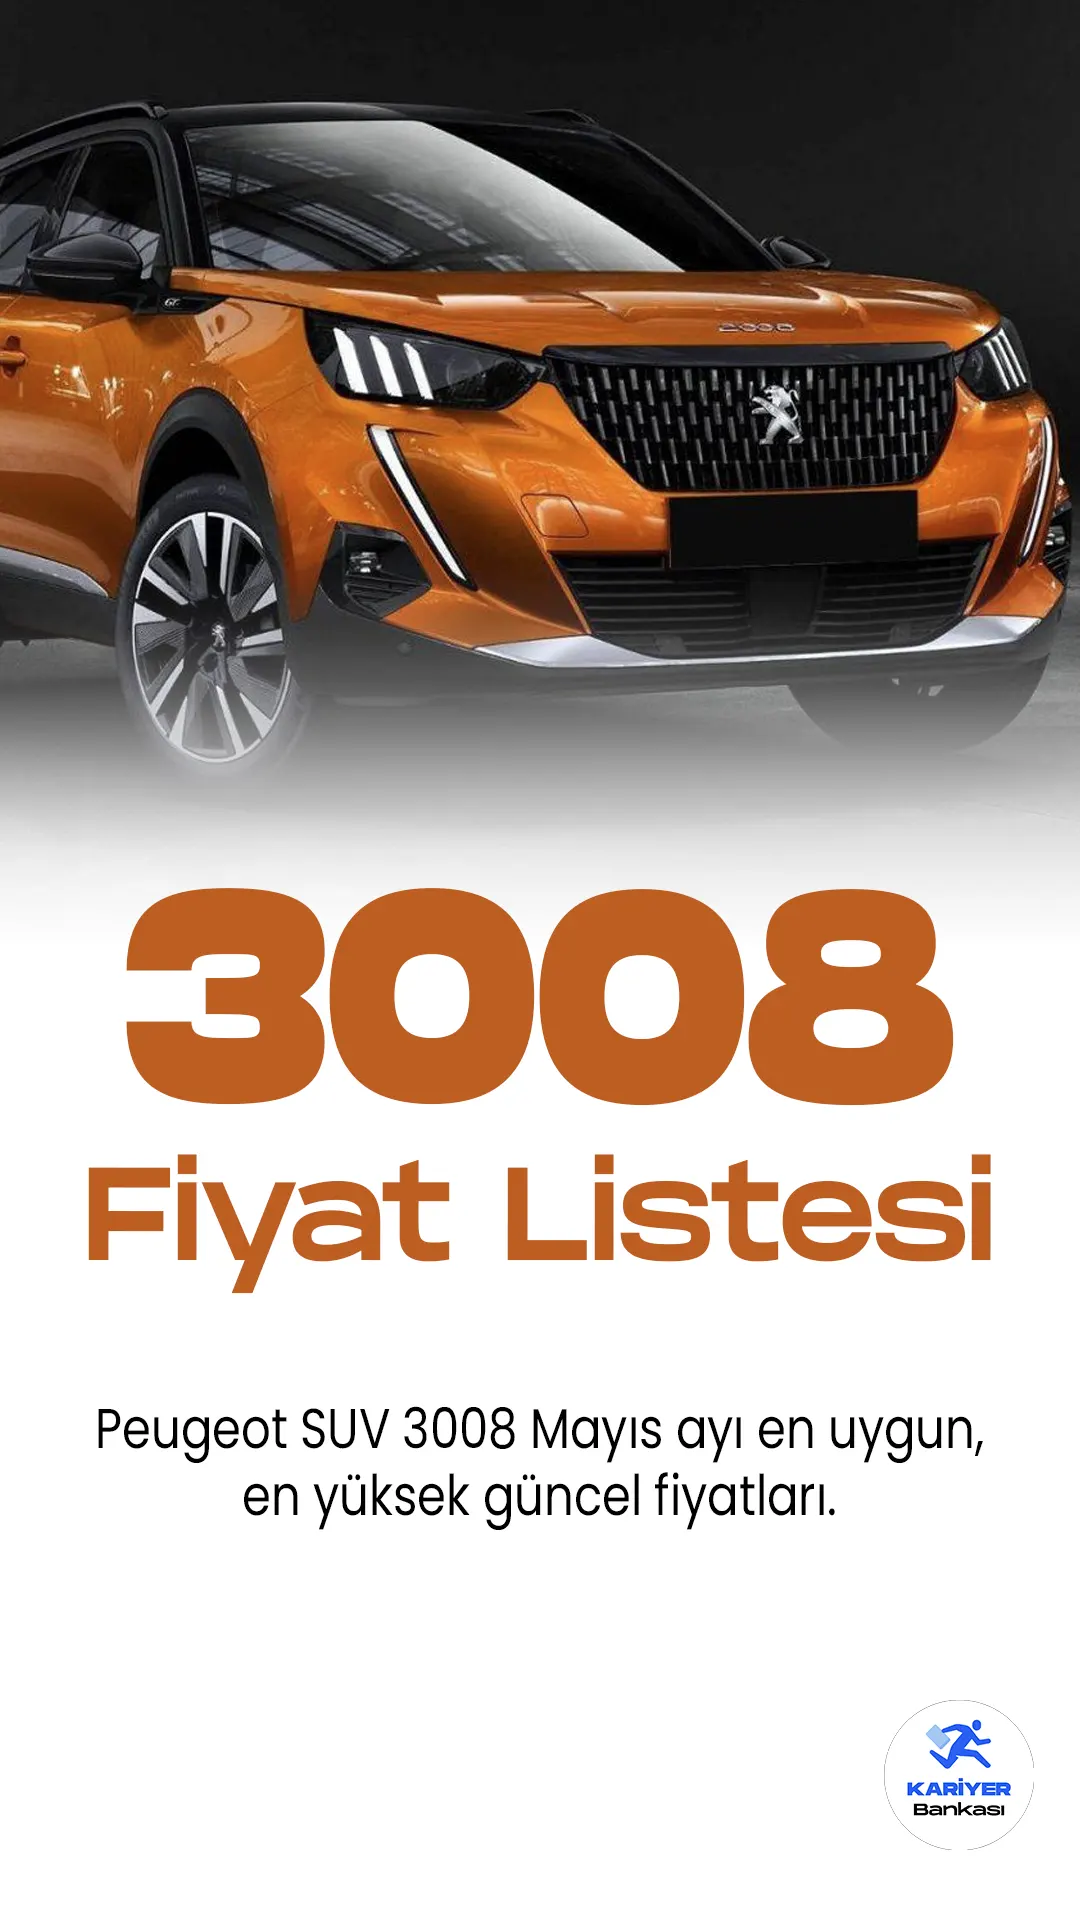 Peugeot 3008 Mayıs Fiyat Listesi Yayımlandı. Popüler araç markaları arasında yer alan Peugeot, her ay fiyat listelerini güncellemeye devam ediyor. Peugeot araç grubunun en çok satanları arasında yer alan 3008 modeli, araç sürücülerinin favori modeli olmaya devam ediyor. Modern tasarımı ve keskin hatlarıyla, sürücü ve yolculara konforlu bir sürüş deneyimi sağlıyor.